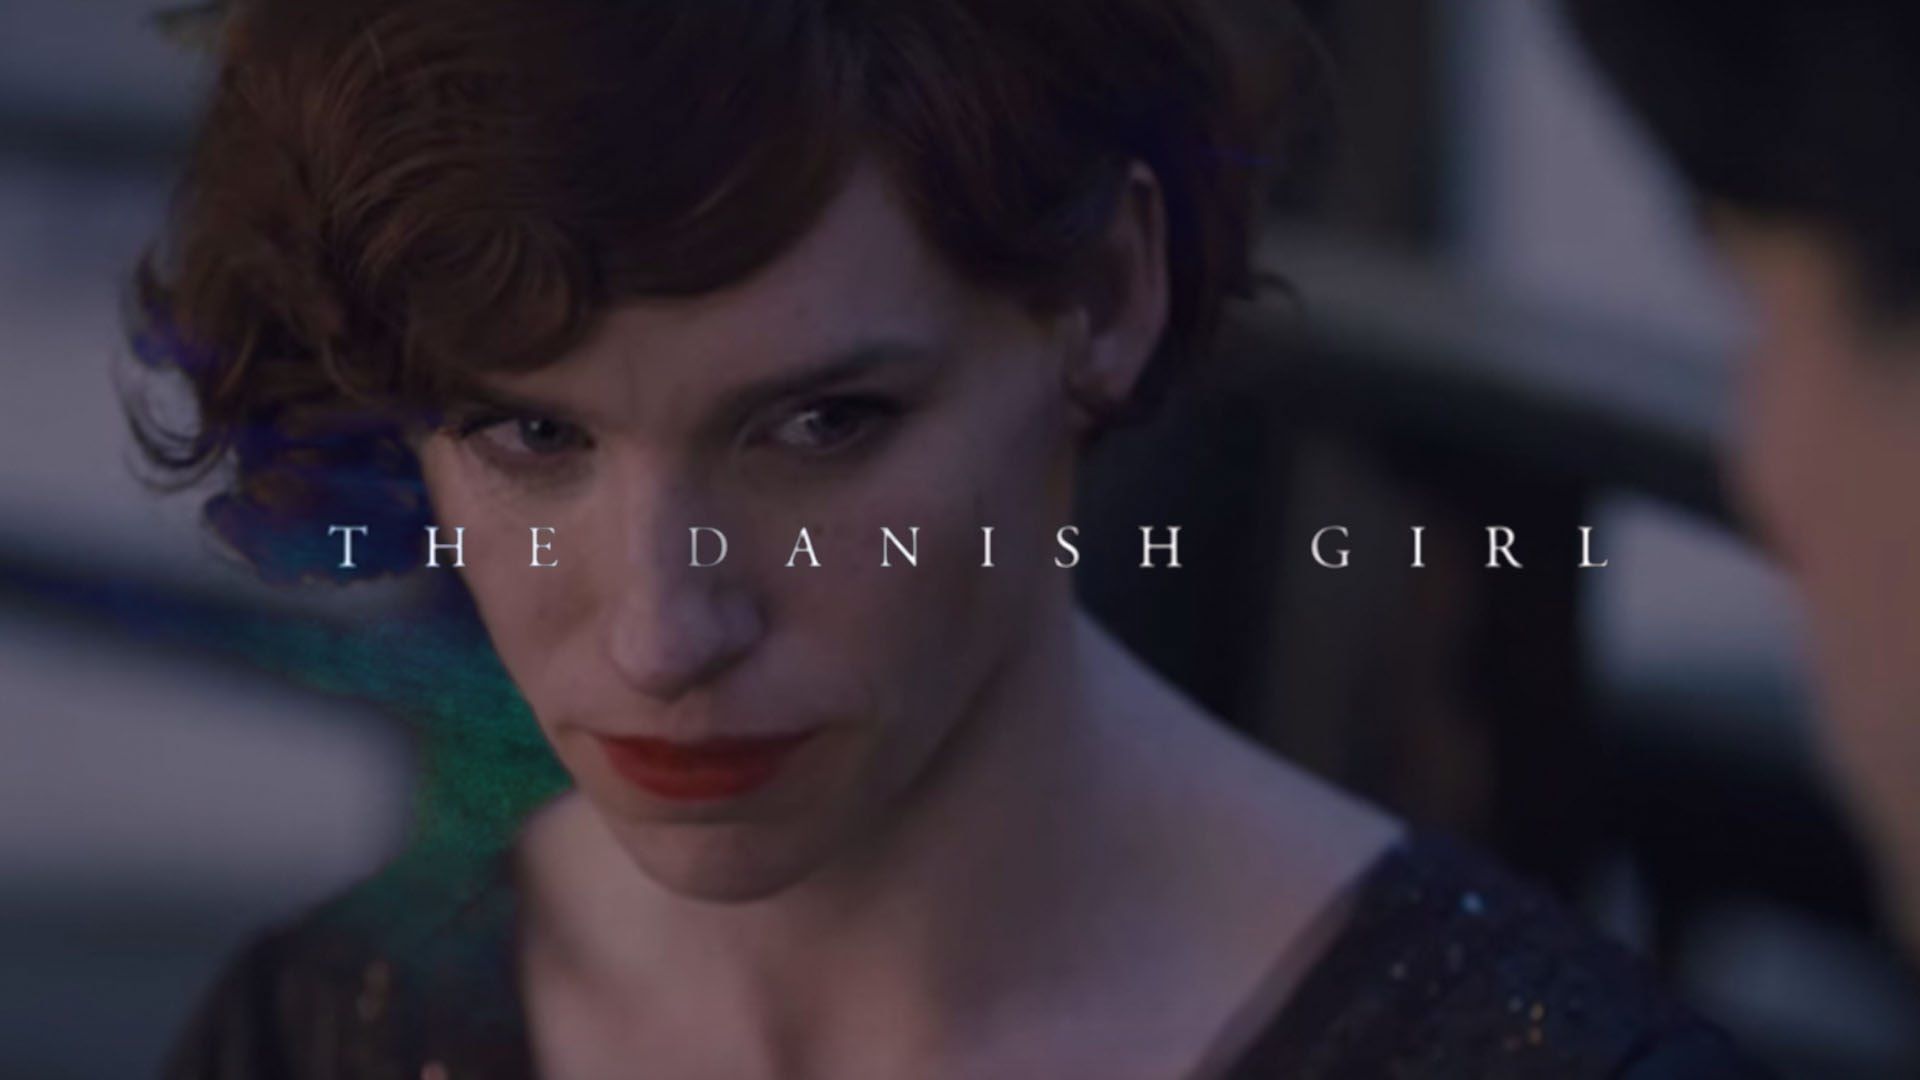 The Danish Girl Movie Wallpaper. Danish girl movie, The danish girl, Girl movies